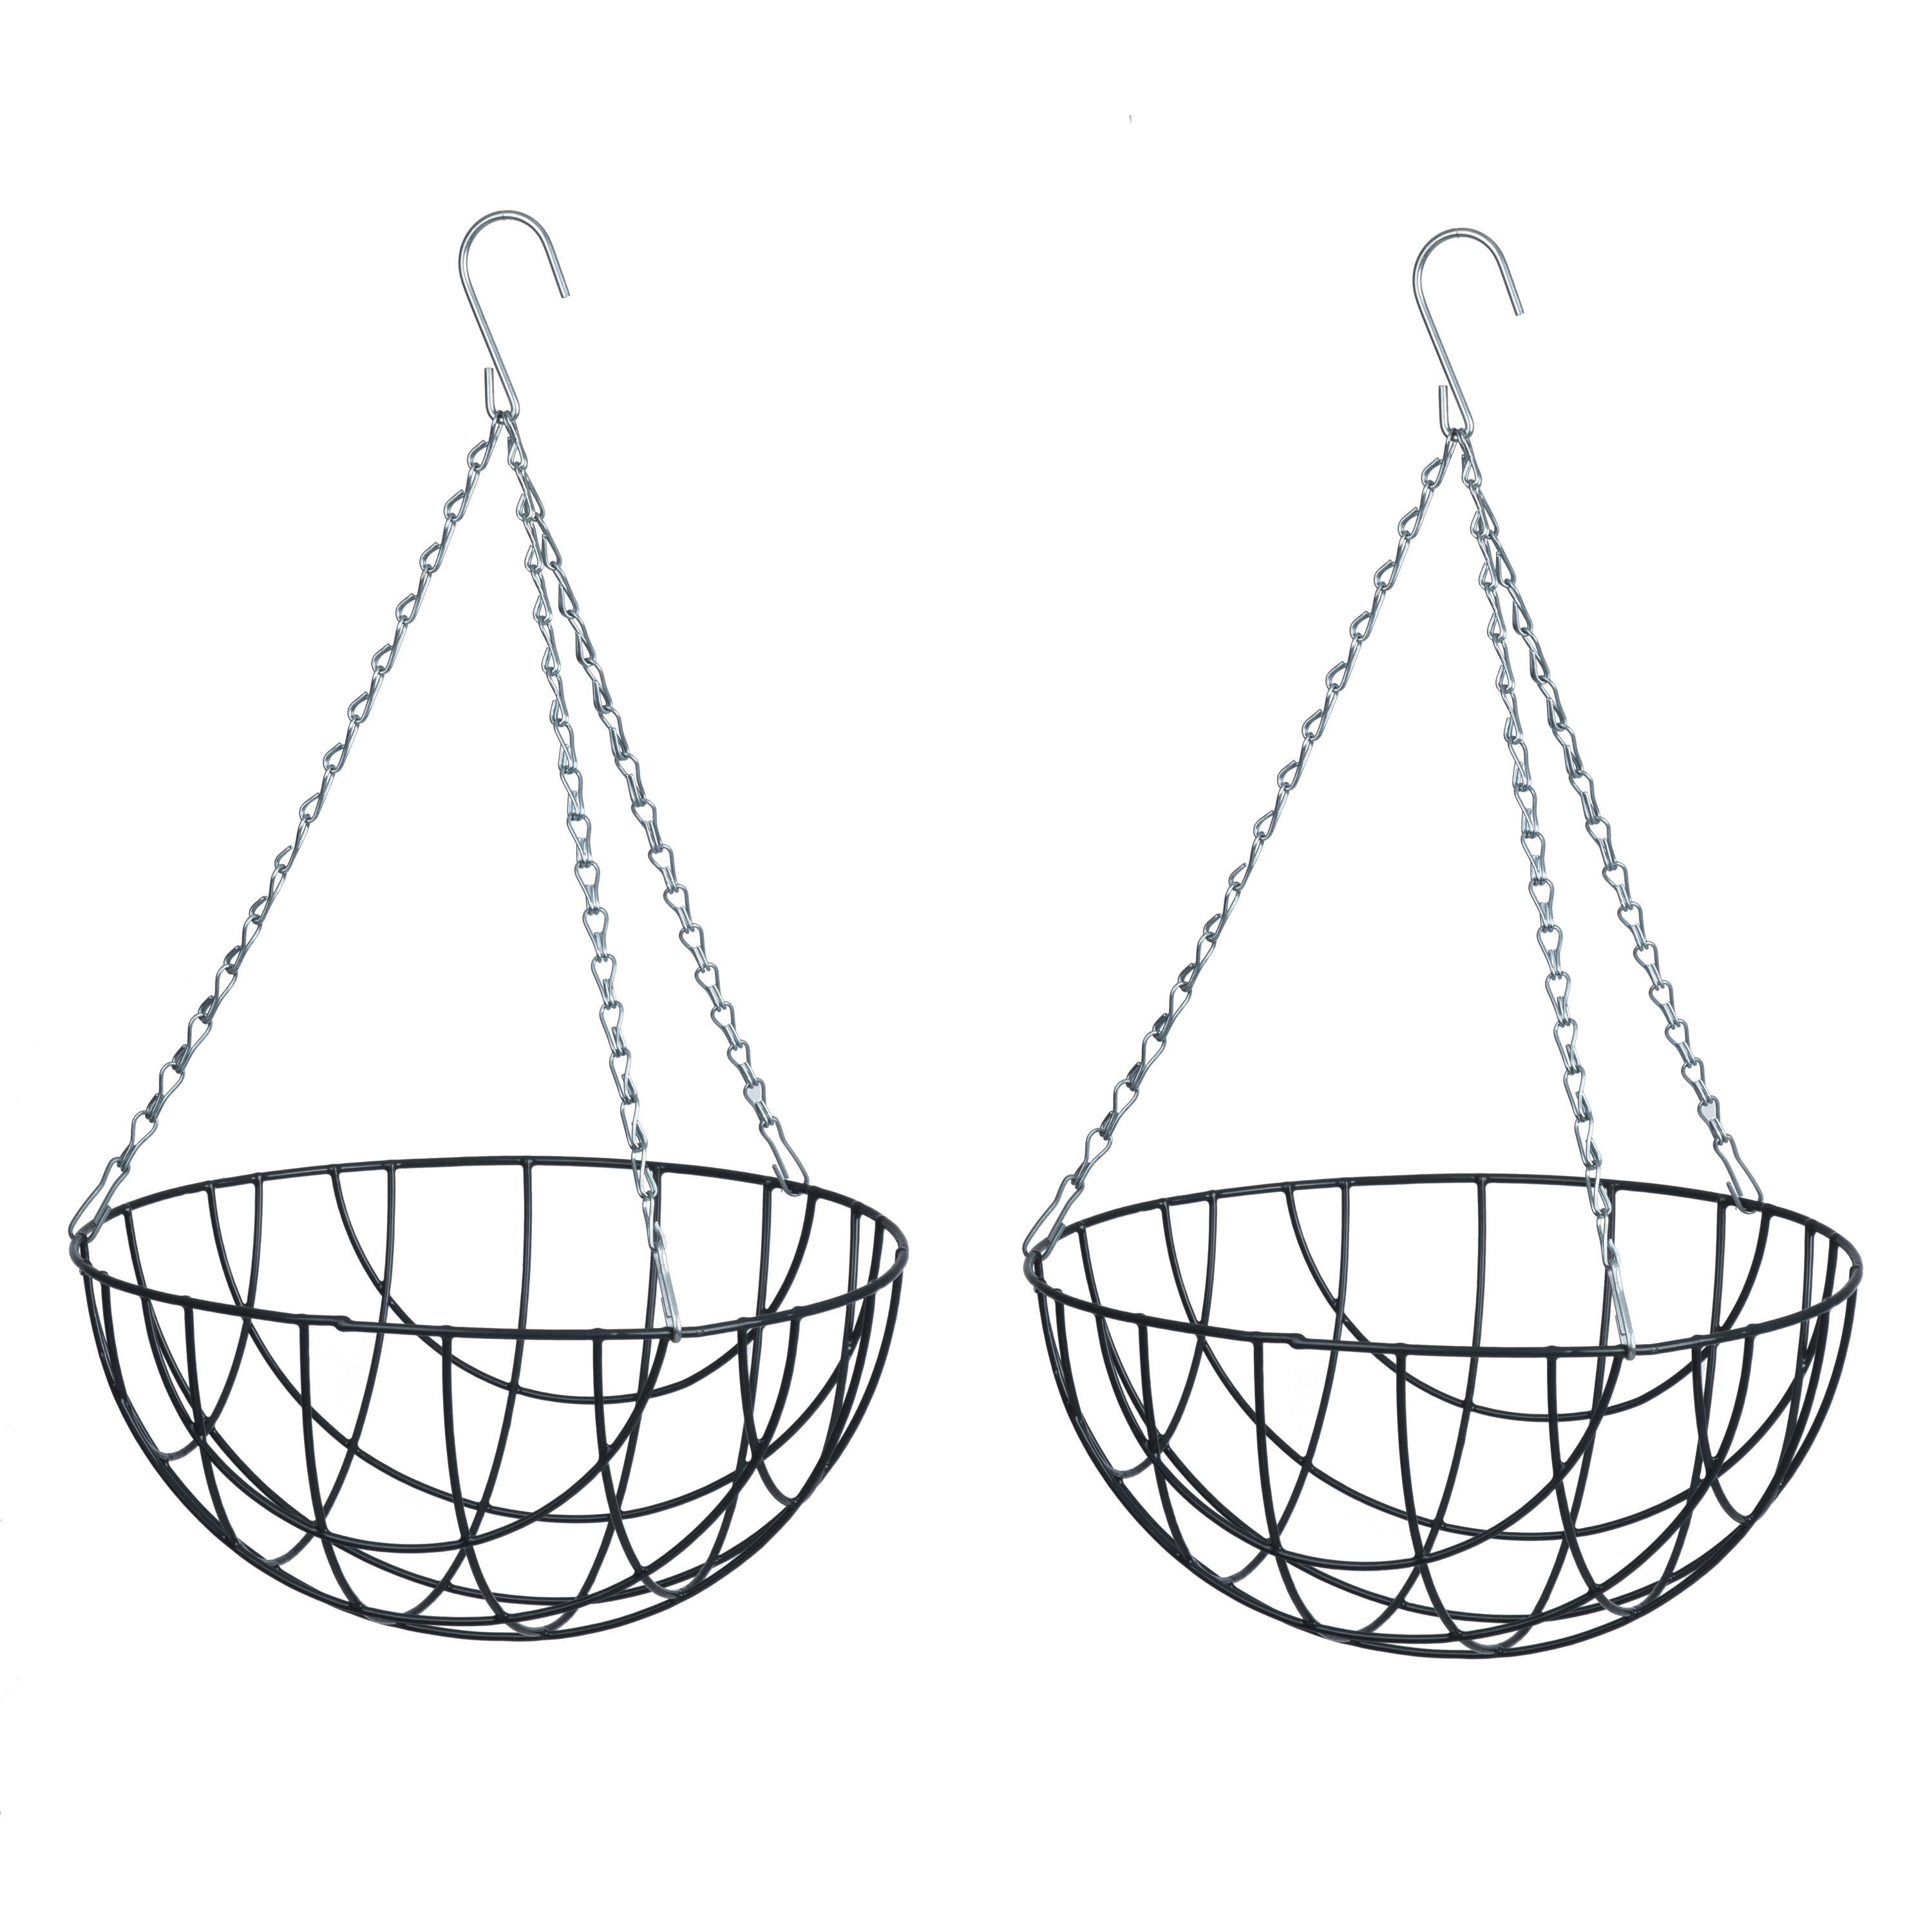 2x stuks hangende plantenbak metaaldraad donkergroen met ketting H16 x D30 cm hanging basket